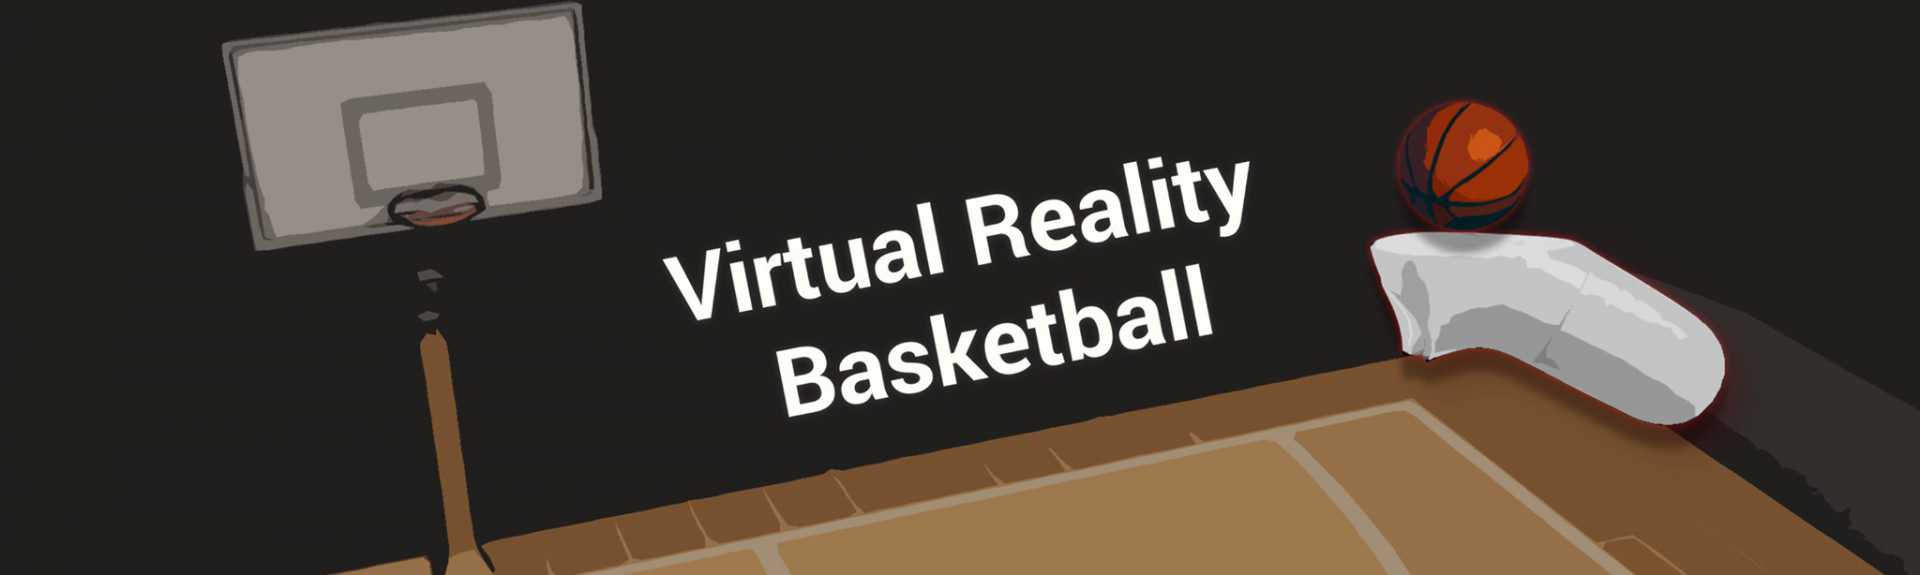 Virtual Reality Basketball